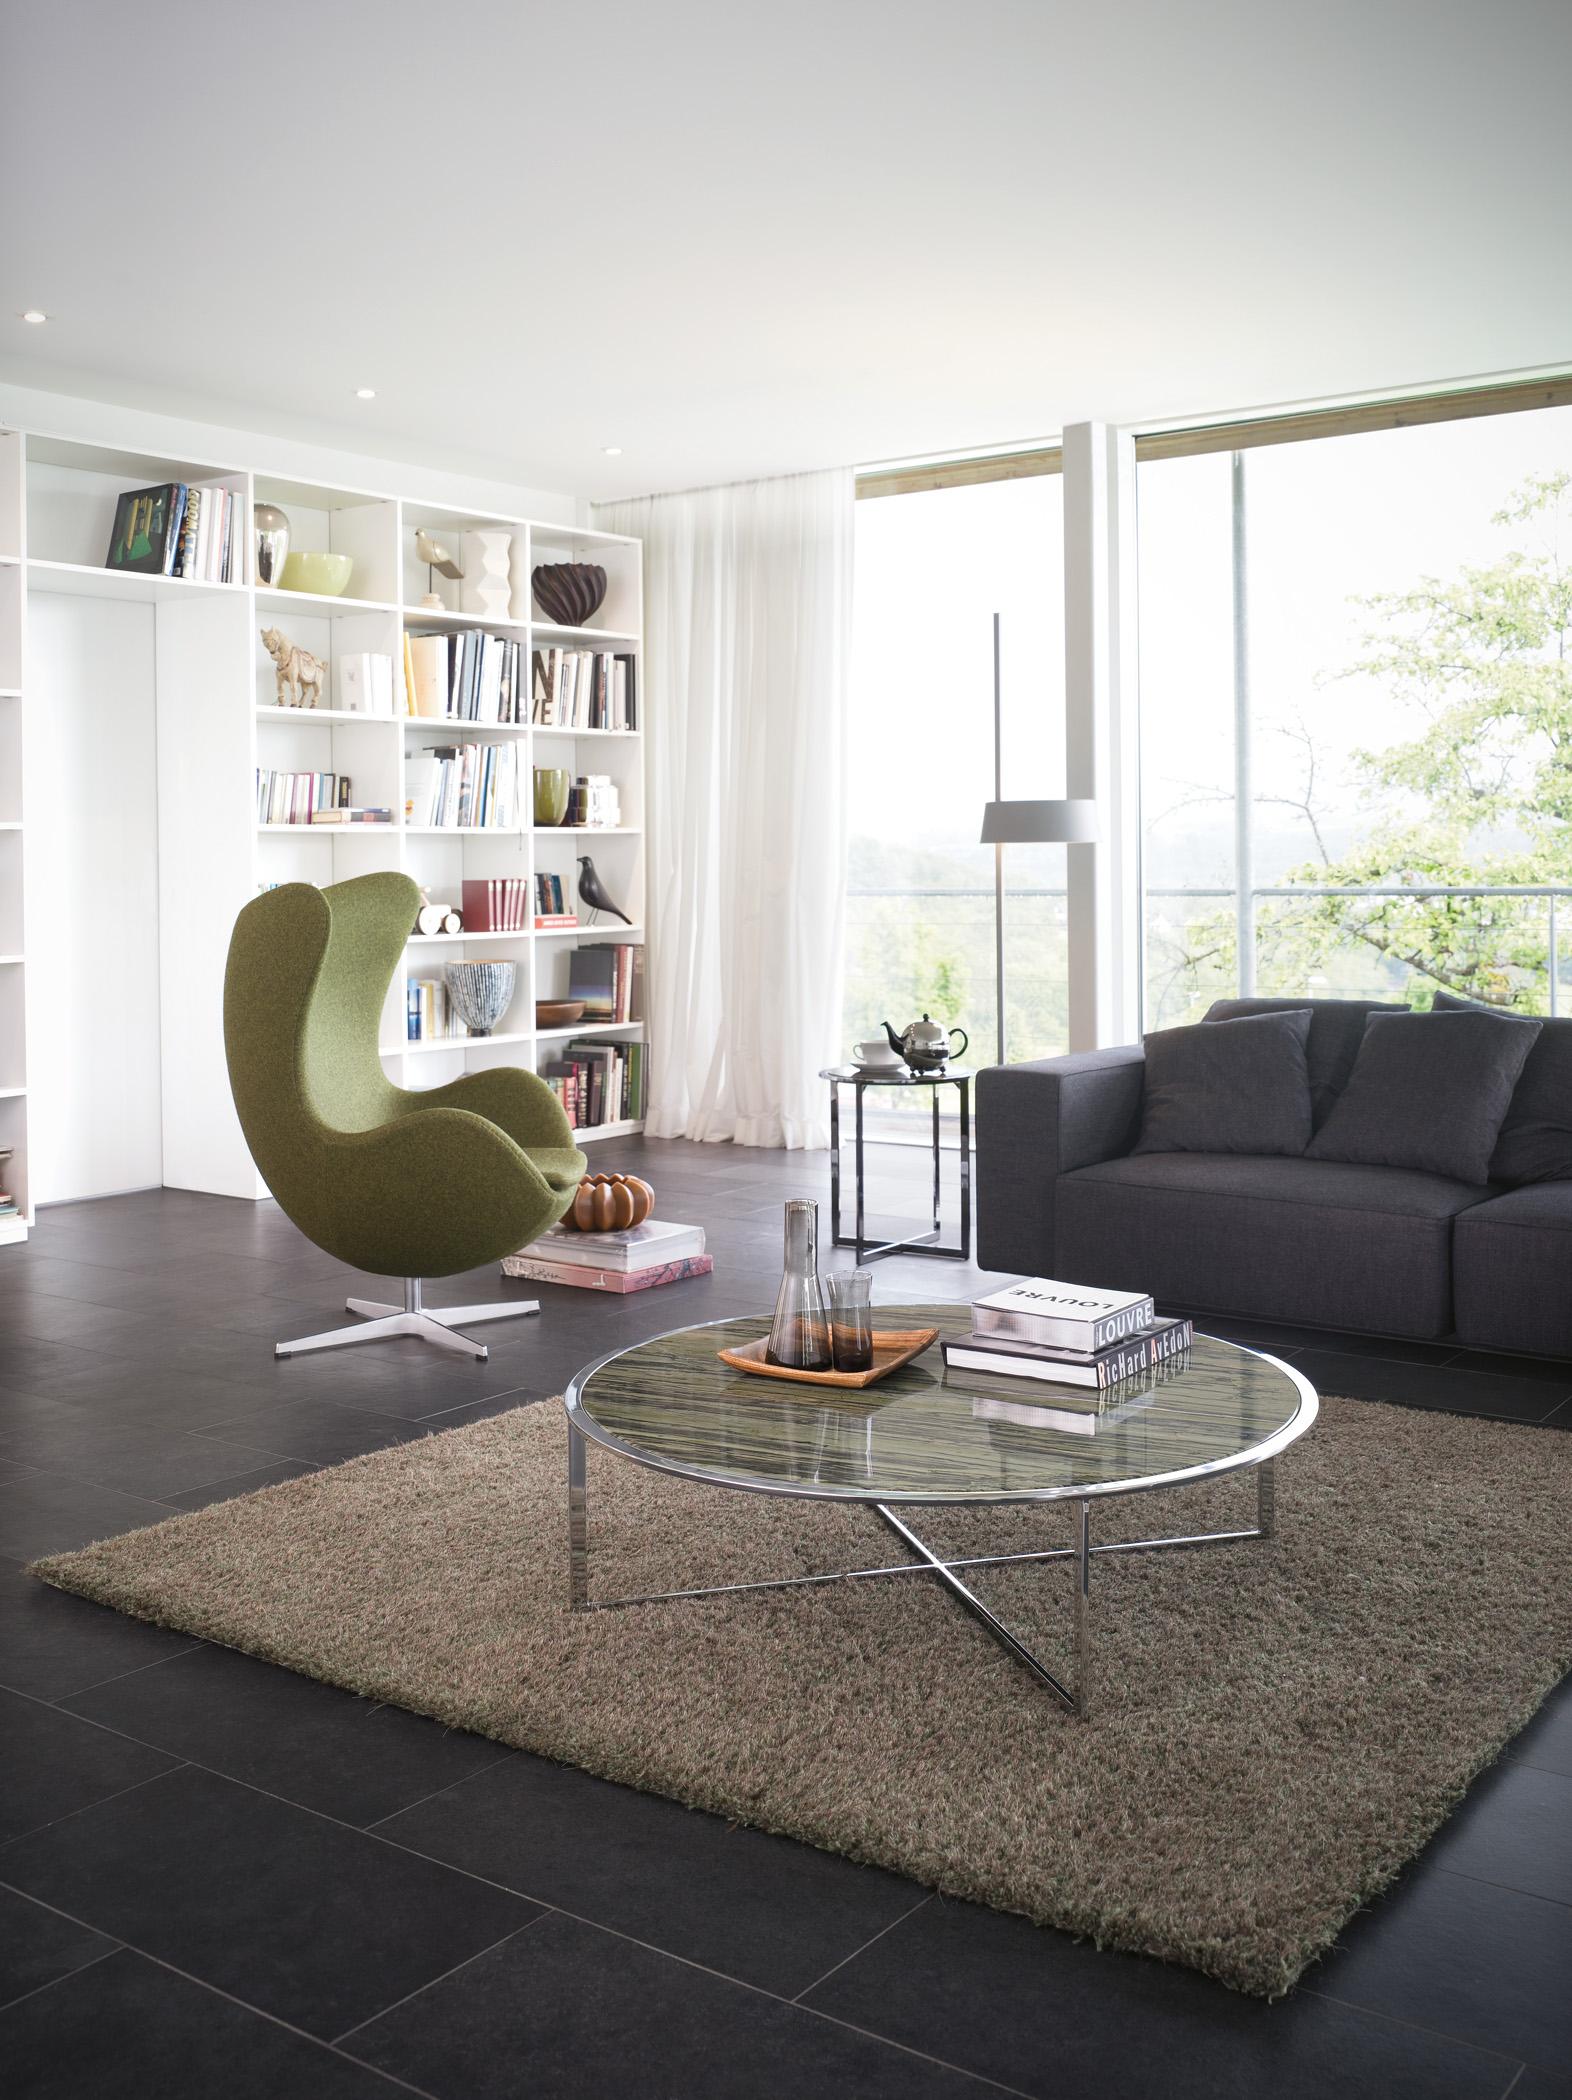 Modernes Wohnzimmer in Naturfarben #couchtisch #fliesen #bücherregal #sofa ©Draenert